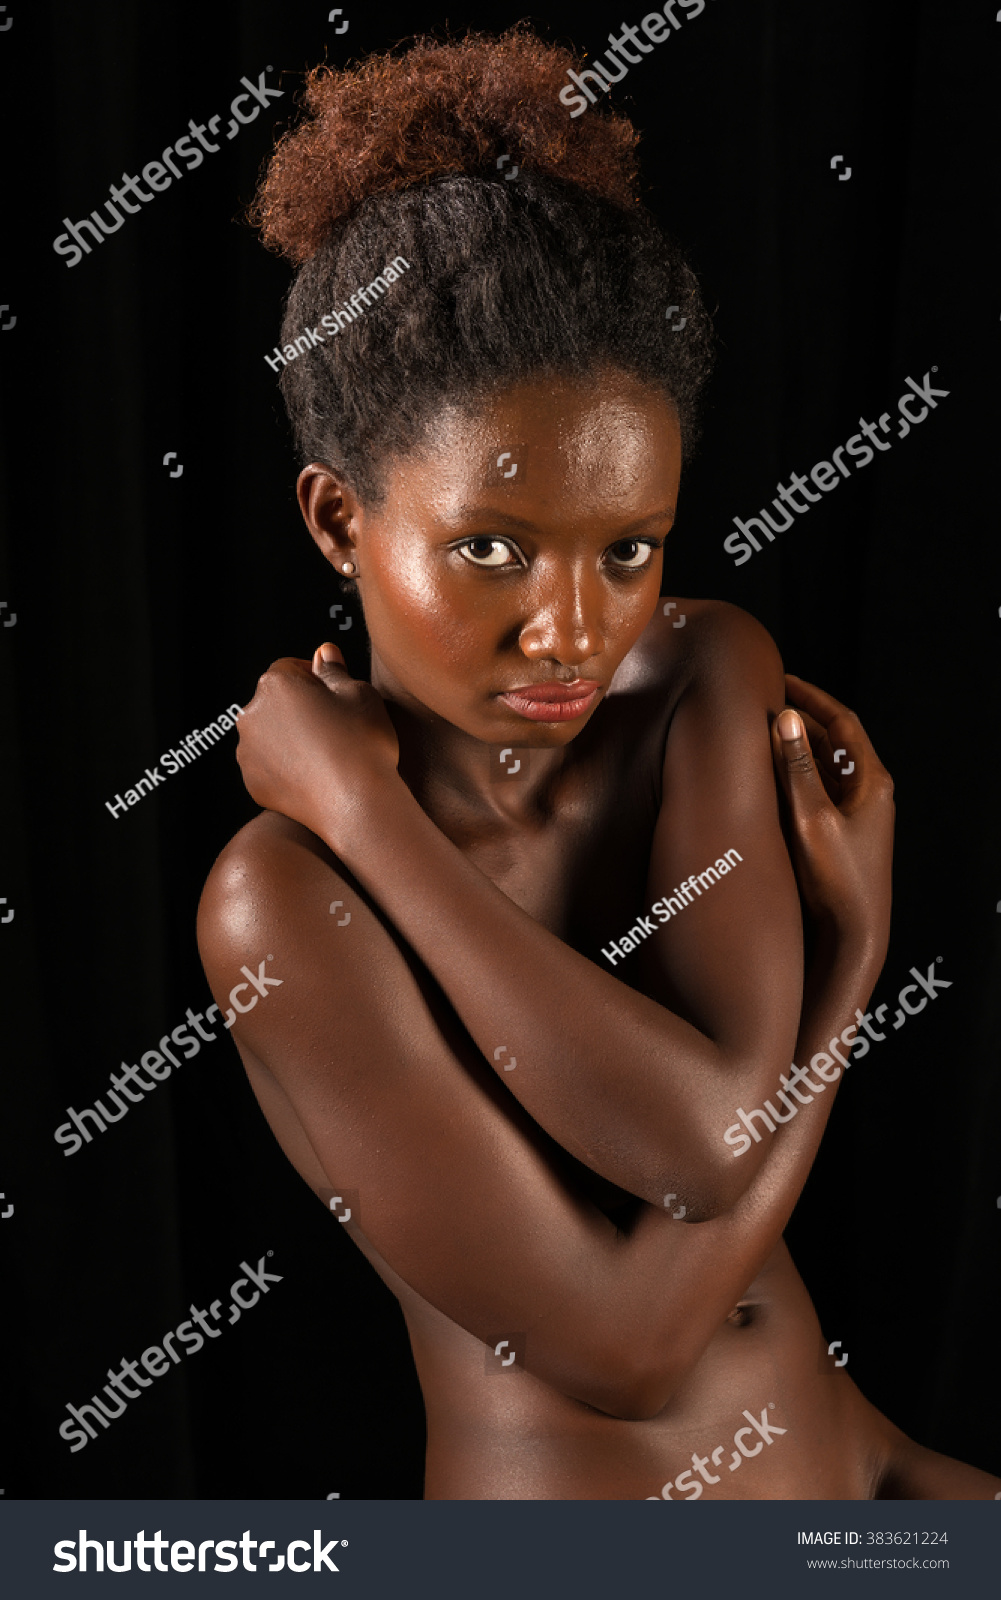 nudes com ruwanda